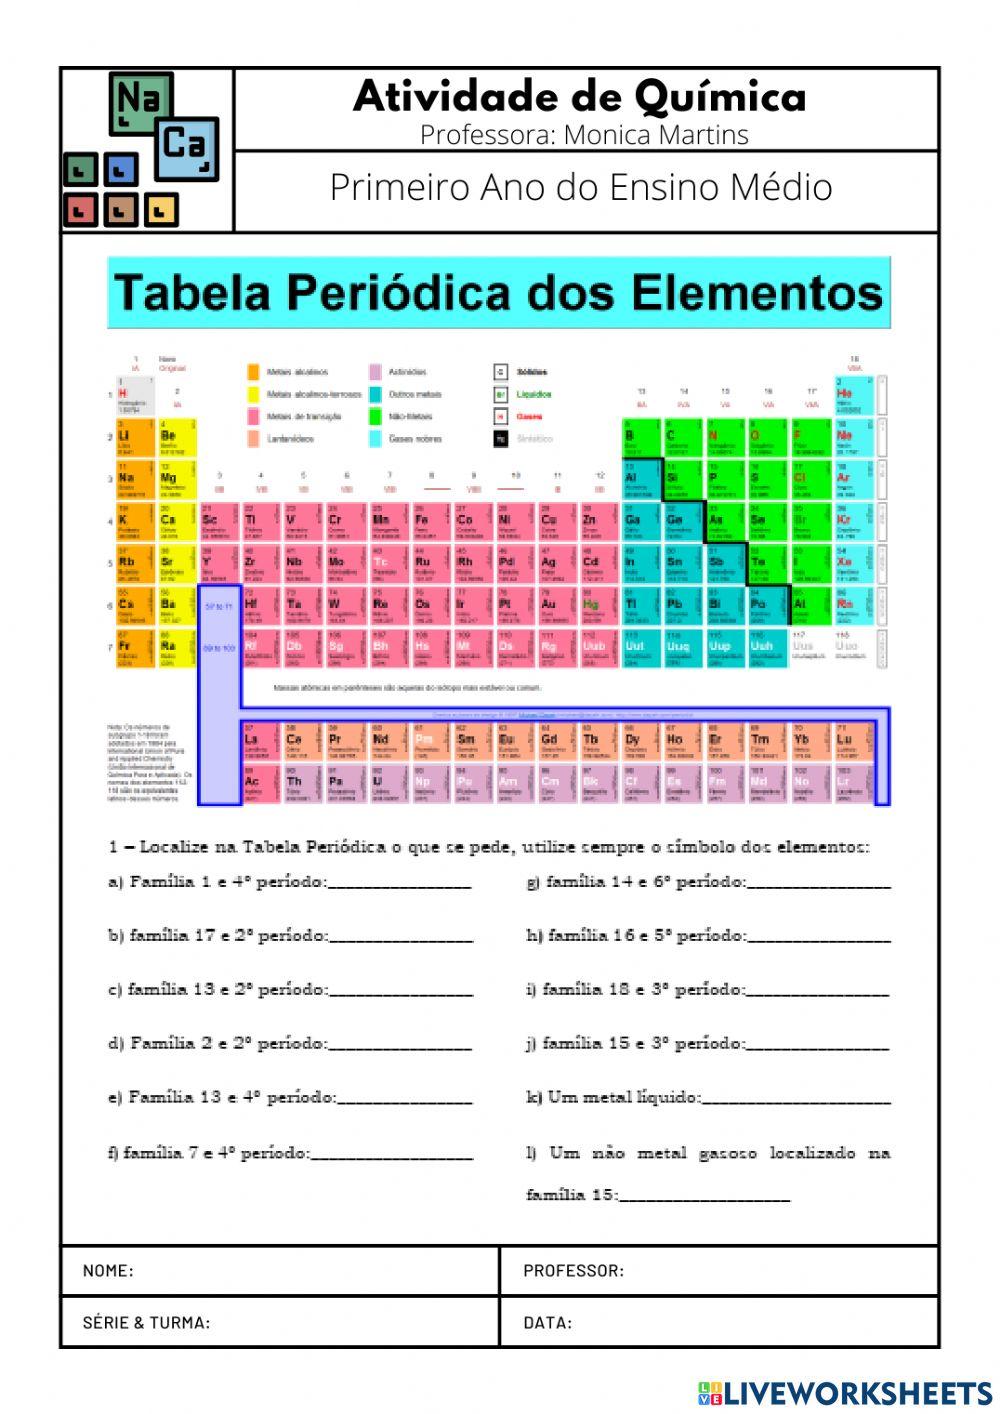 Tabela periodica 2